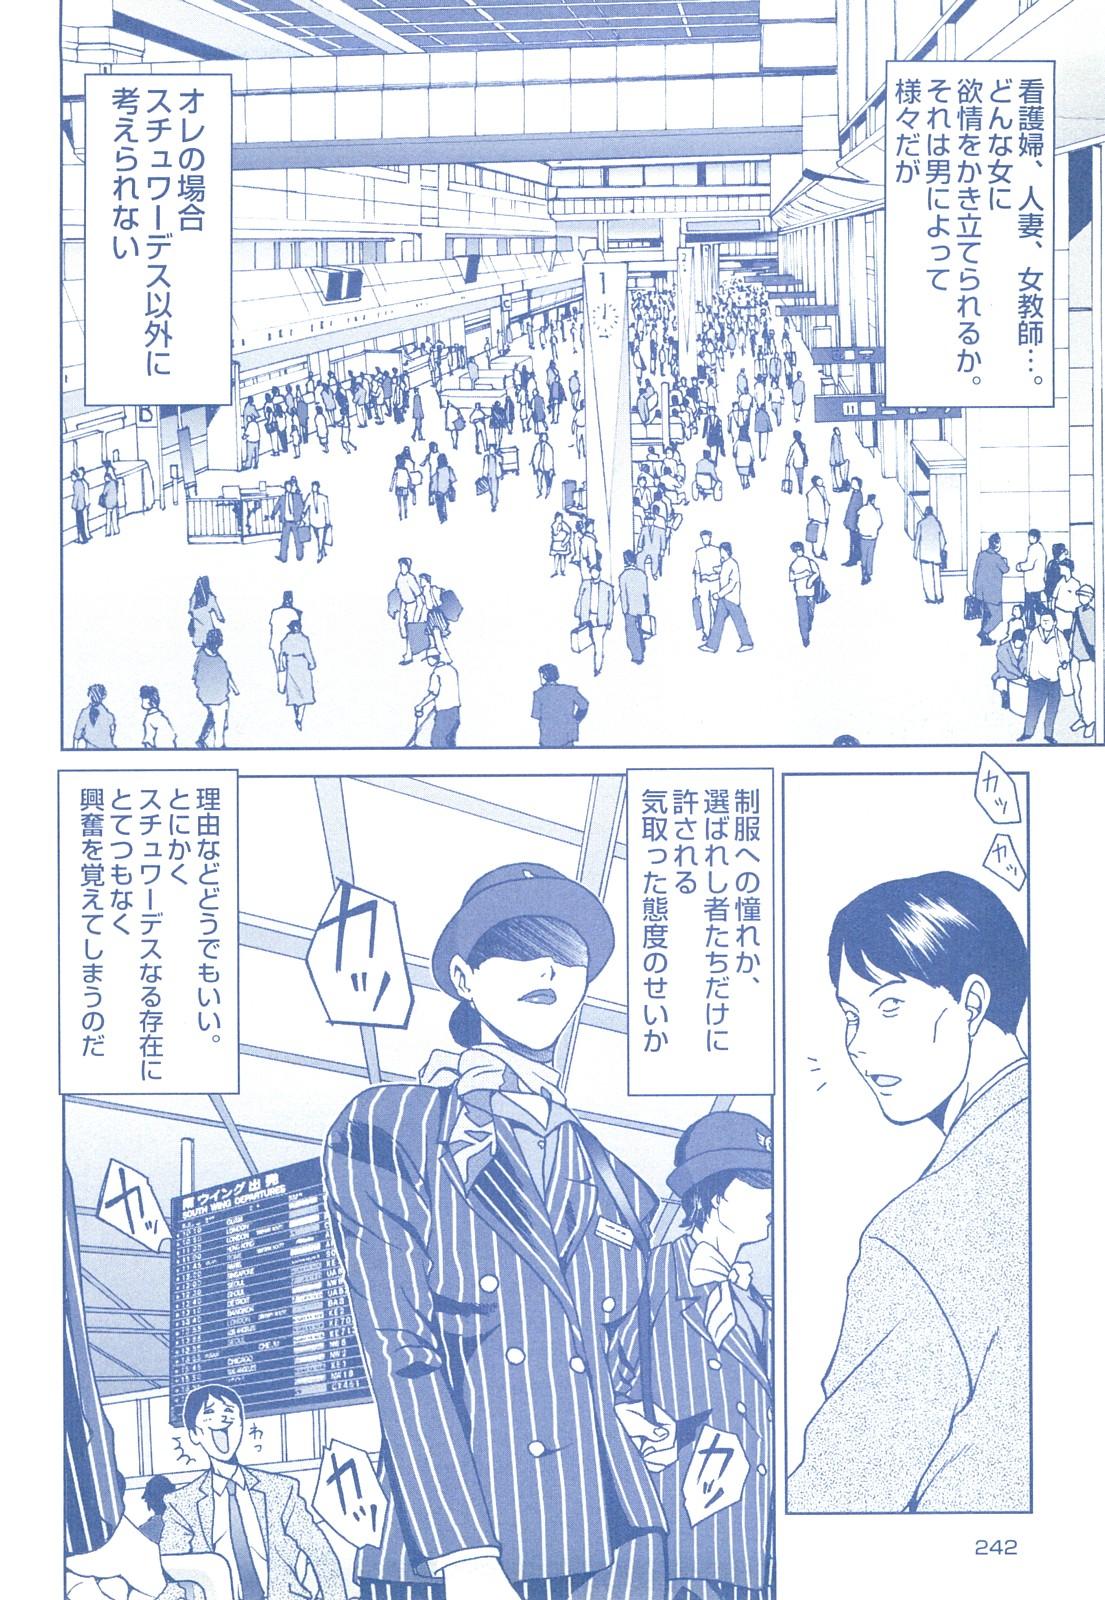 コミック裏モノJAPAN Vol.18 今井のりたつスペシャル号 241